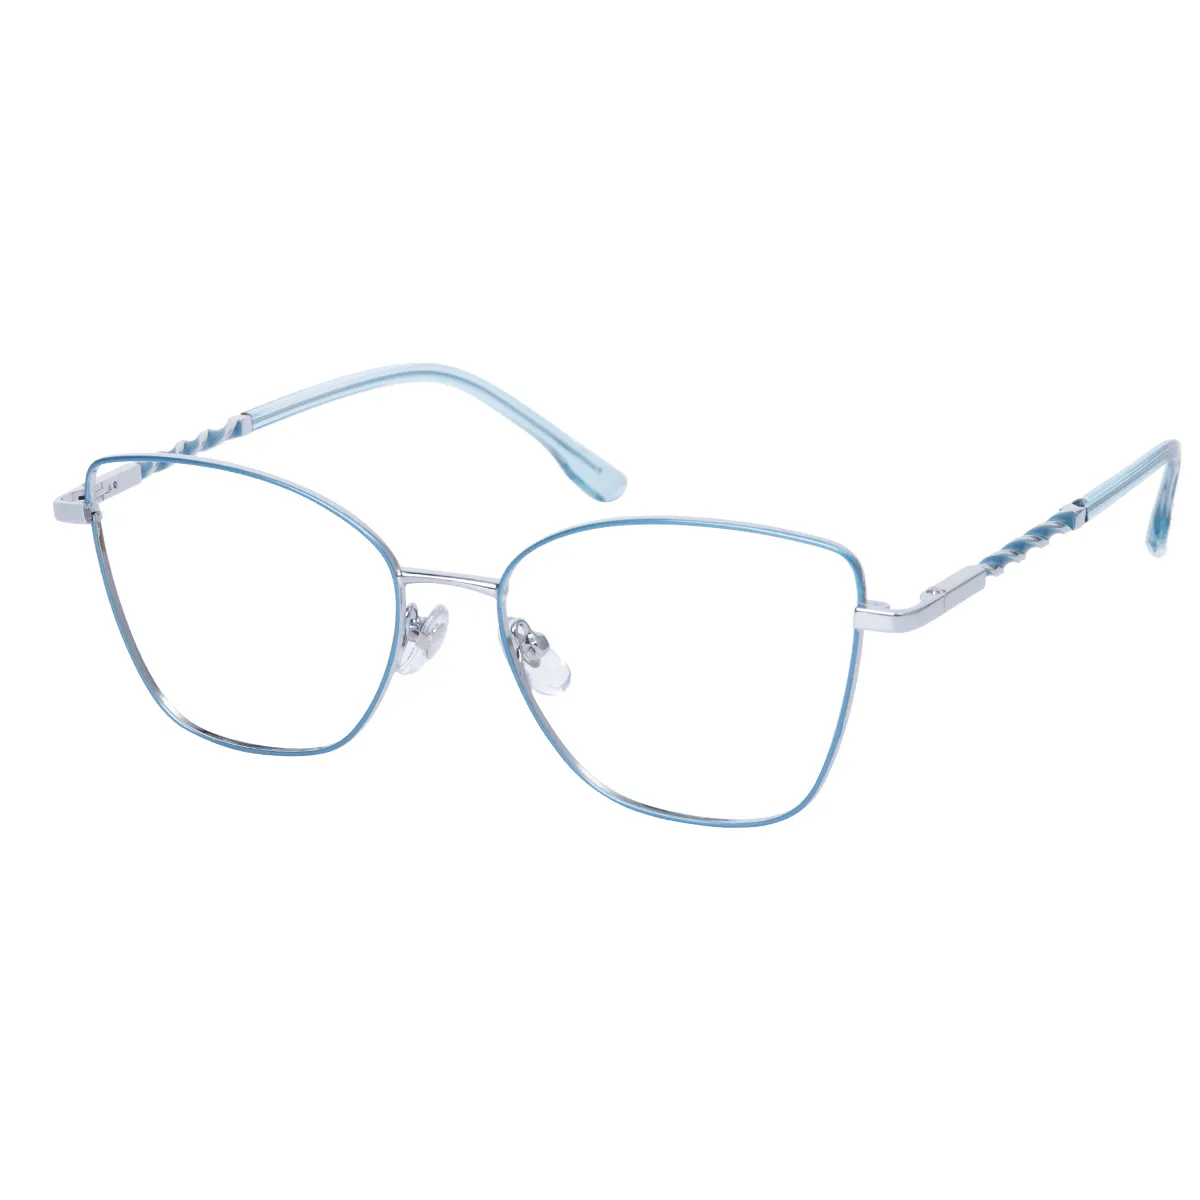 Sable - Square Light Blue Glasses for Women